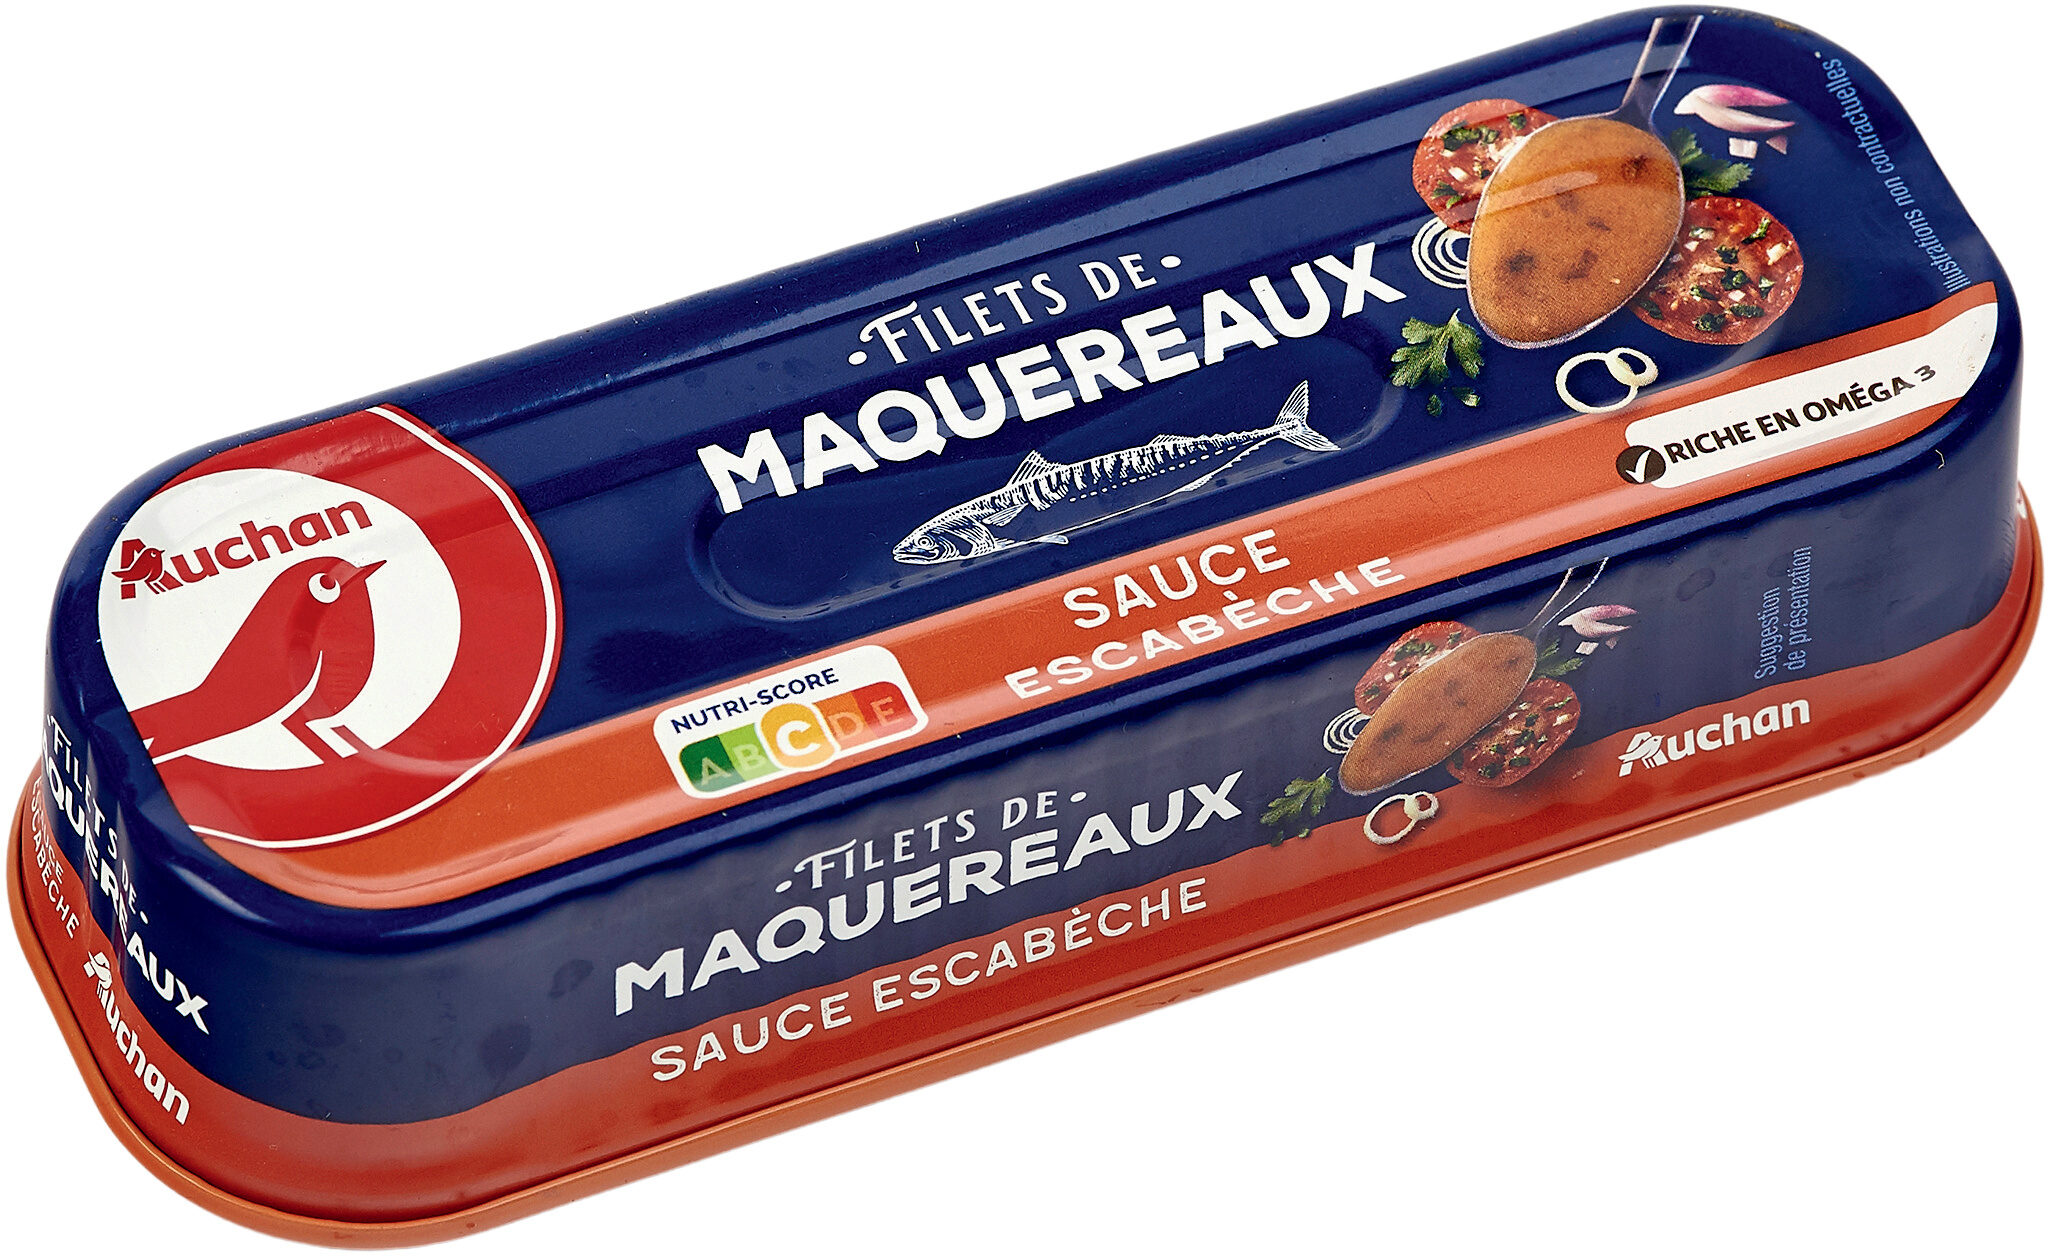 AUCHAN Filets de maquereaux sauce escabèche - riche en oméga 3 169g - Product - fr